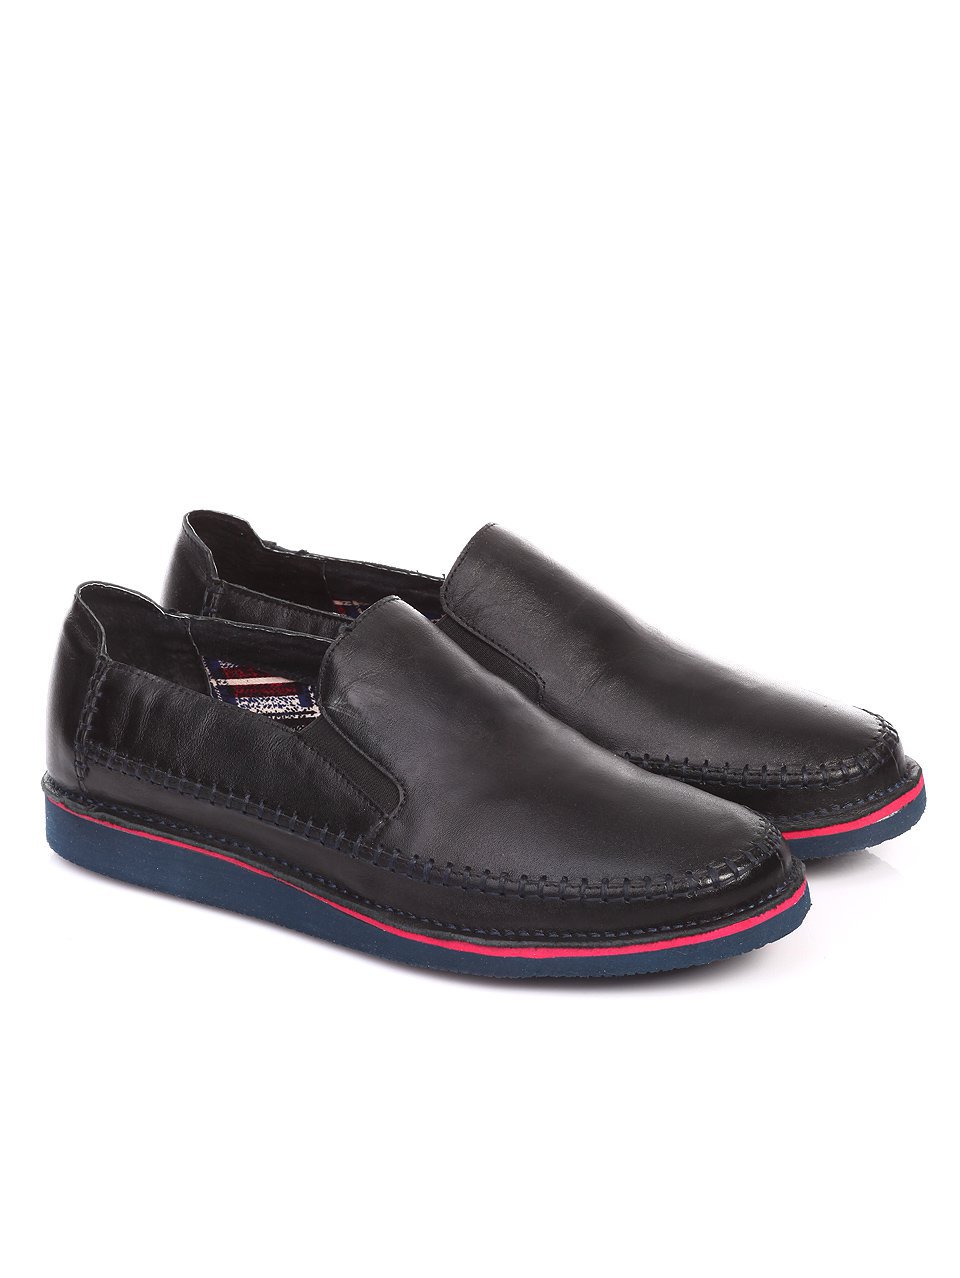 Ежедневни мъжки обувки от естествена кожа в черно 7N-17415 black